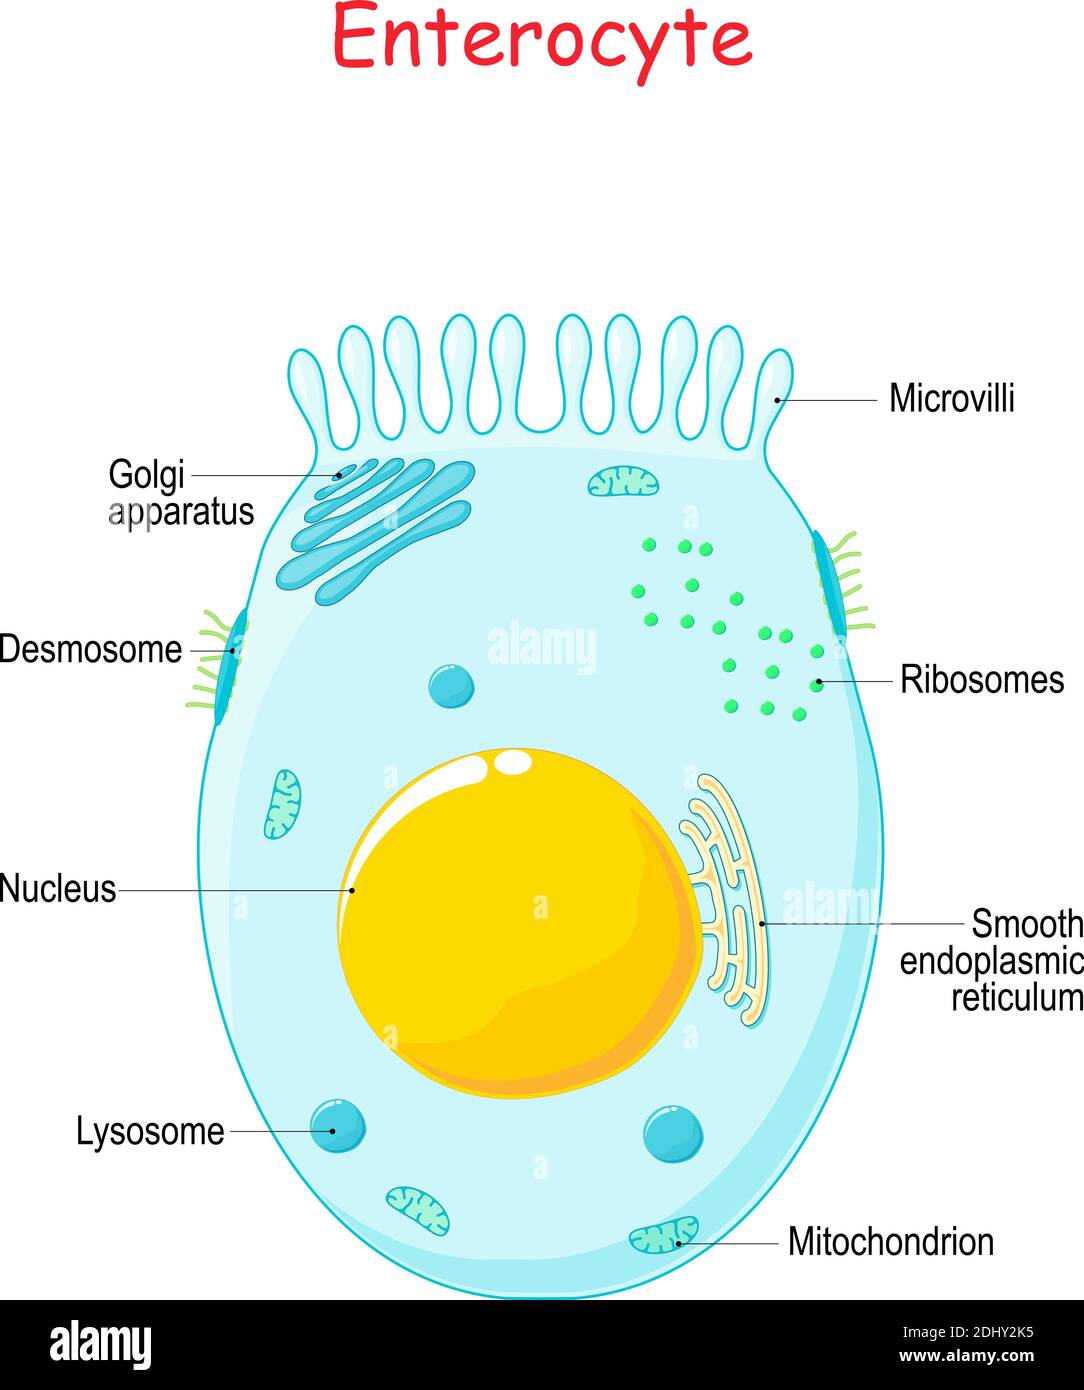 Enterocita. Cellula epiteliale assorbente intestinale con microvilli. Struttura dell'enterocita. Infografiche. Illustrazione vettoriale su sfondo bianco. Illustrazione Vettoriale